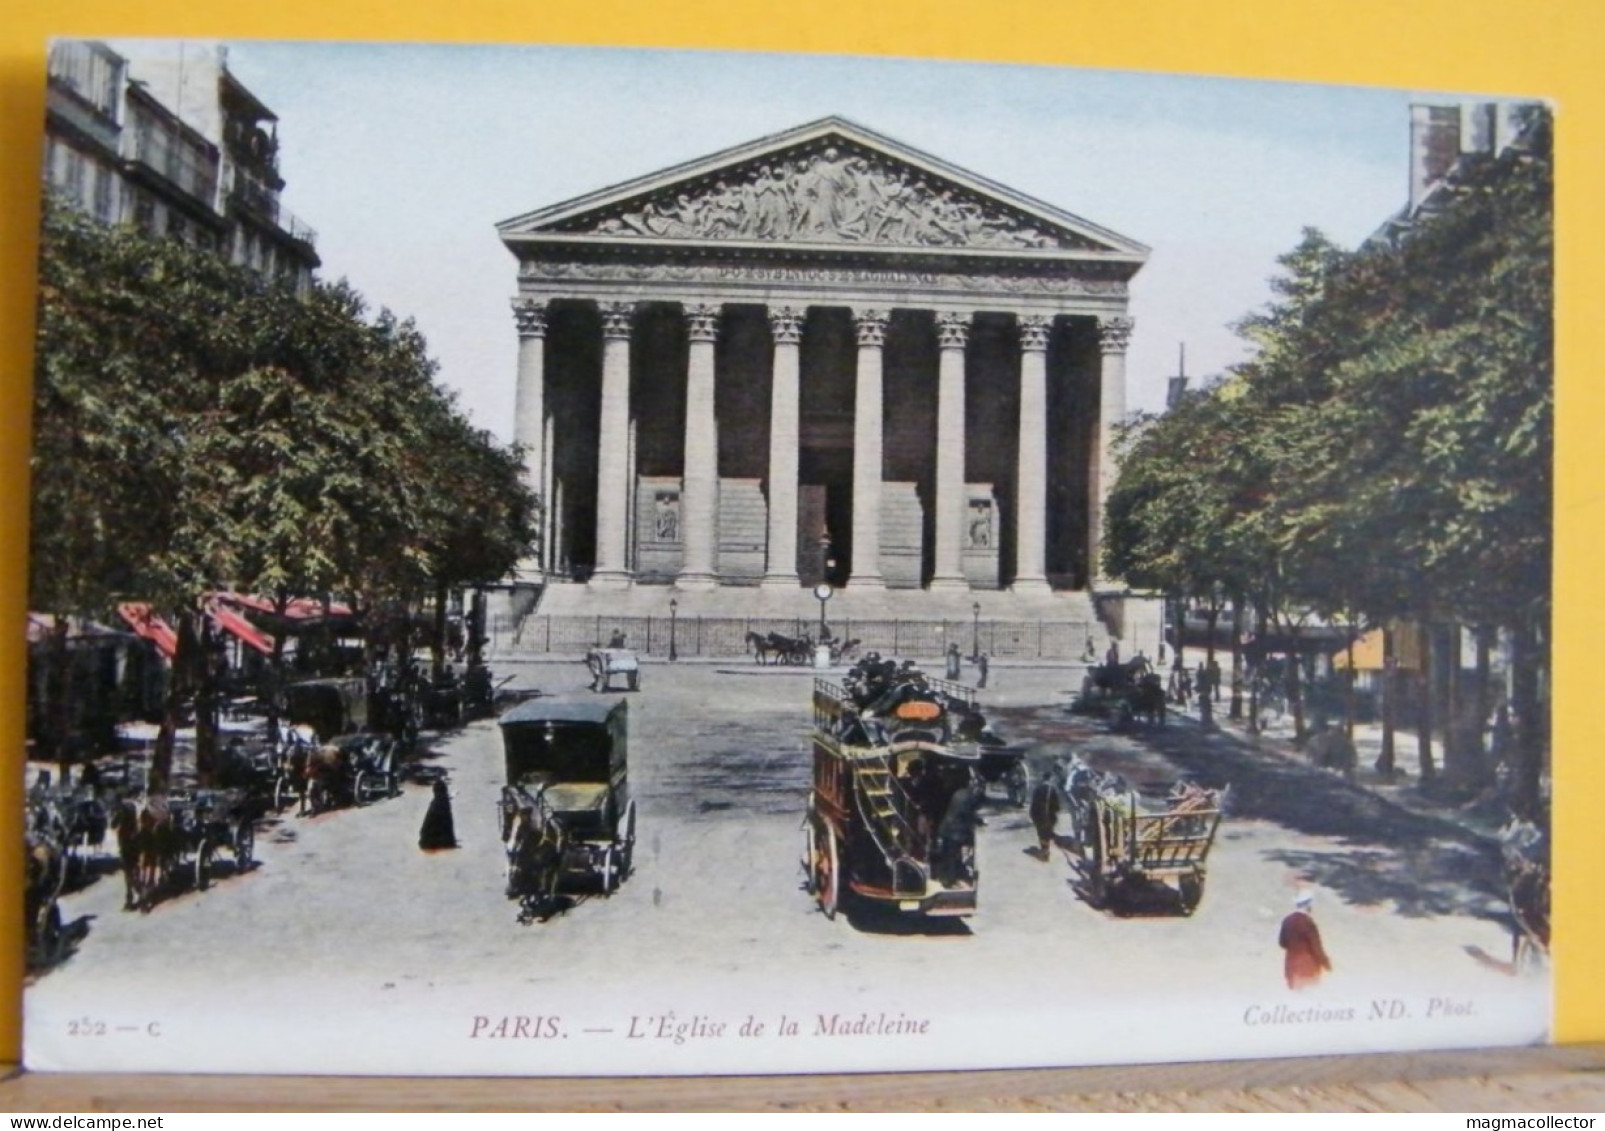 (P1) PARIGI / PARIS - L'EGLISE DE LA MADELEINE - 252-C - NON VIAGGIATA 1910/20ca - Chiese